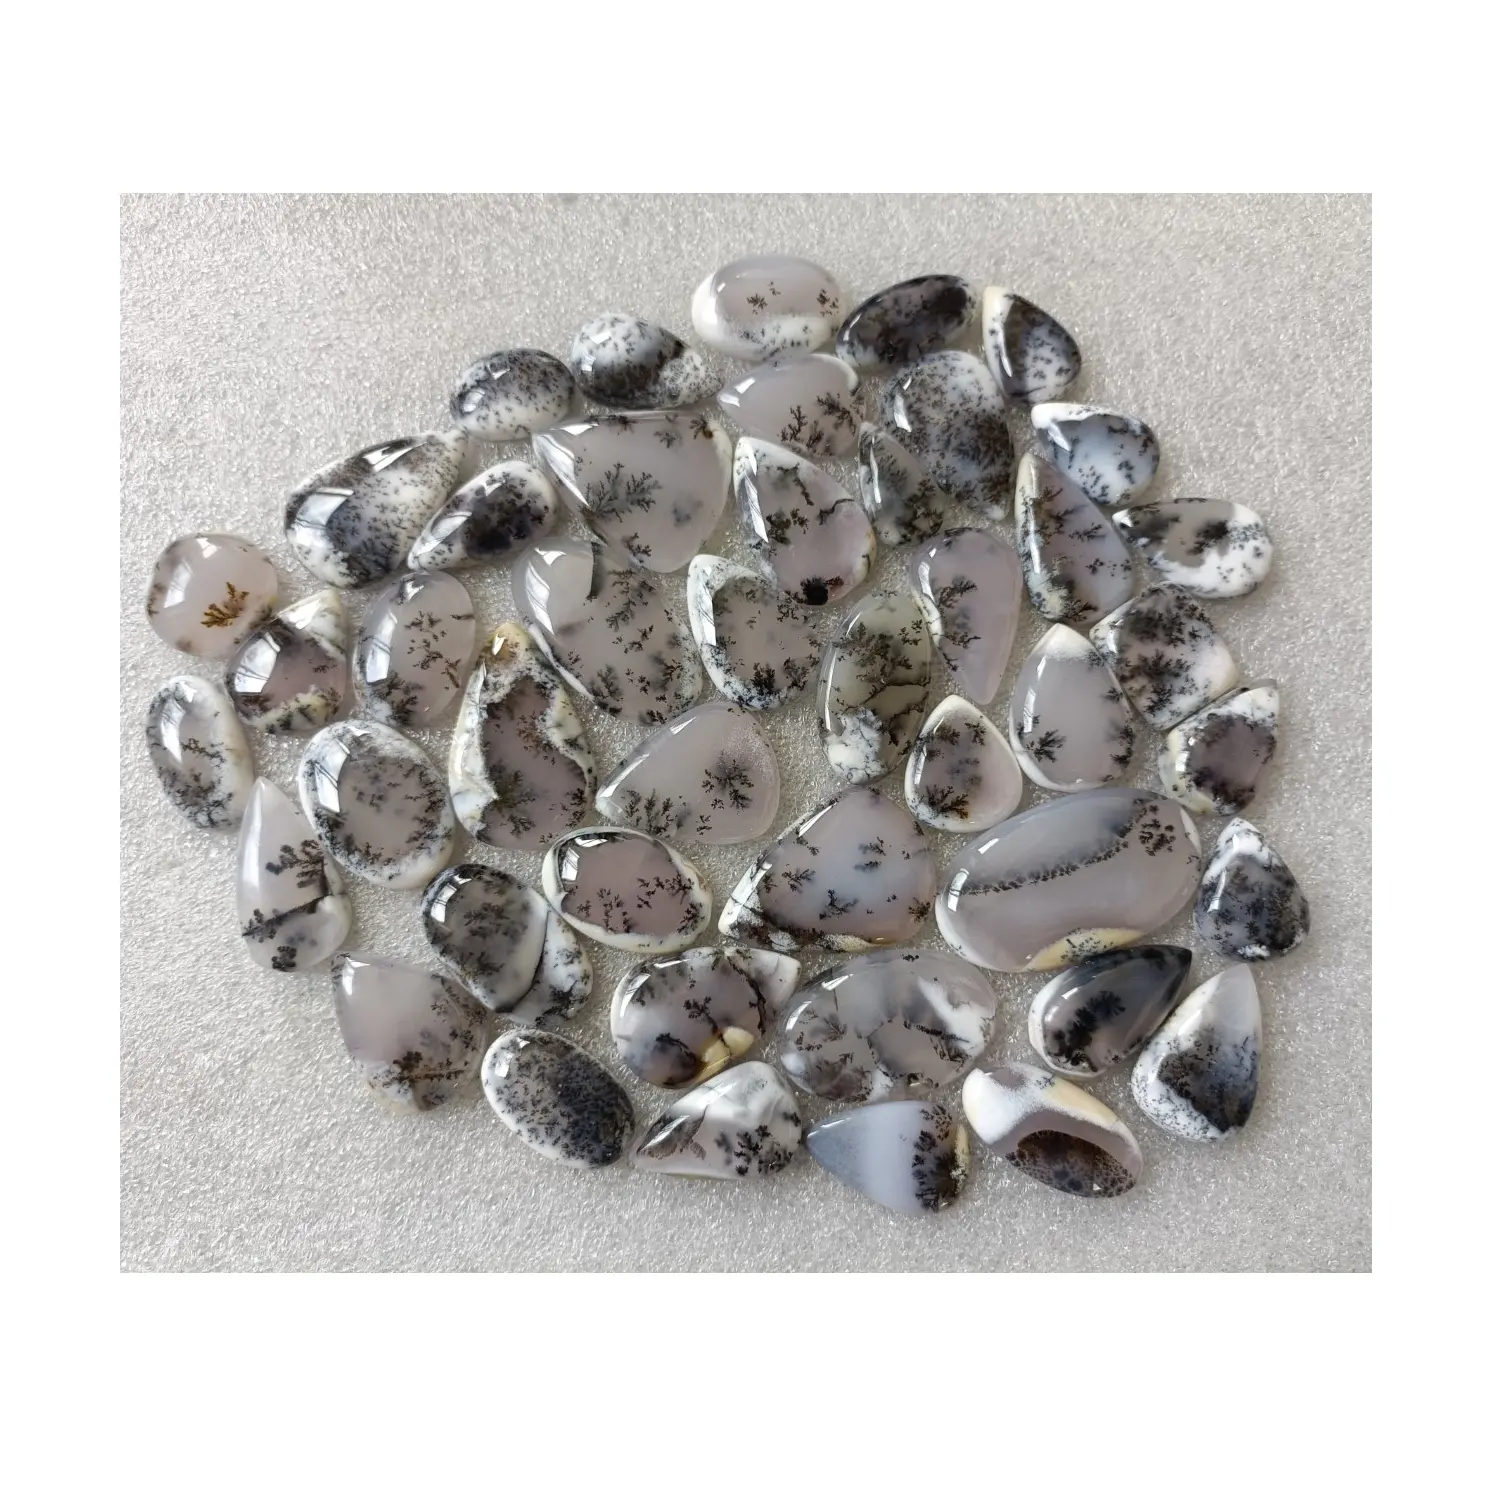 Çok tip için standart kalite dendritik Opal taş satın en düşük fiyatlarla doğal dendritik Opal taş kullanır